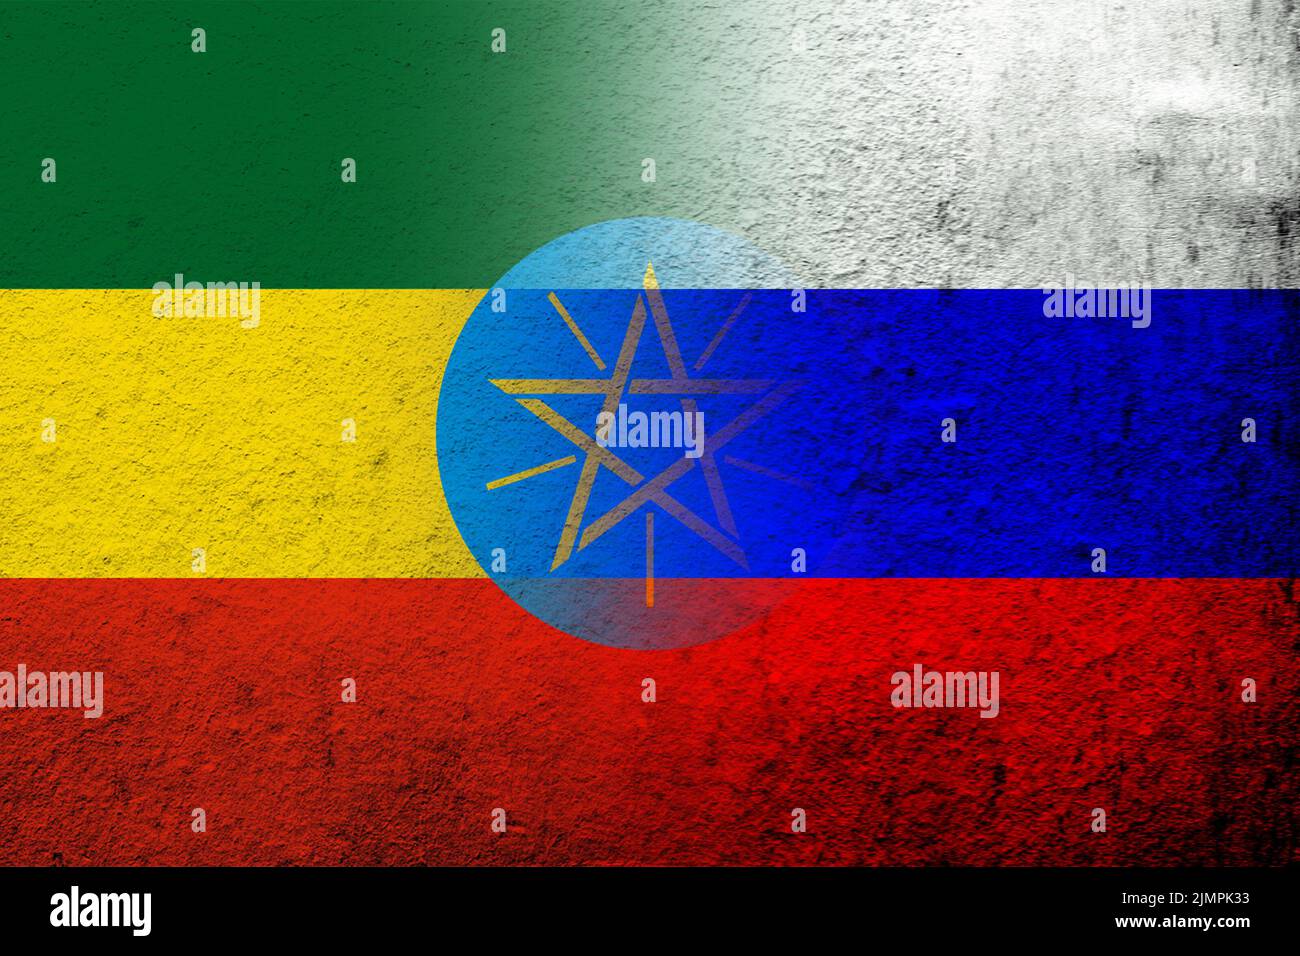 Drapeau national de la Fédération de Russie avec la République d'Éthiopie drapeau national. Grunge l'arrière-plan Banque D'Images